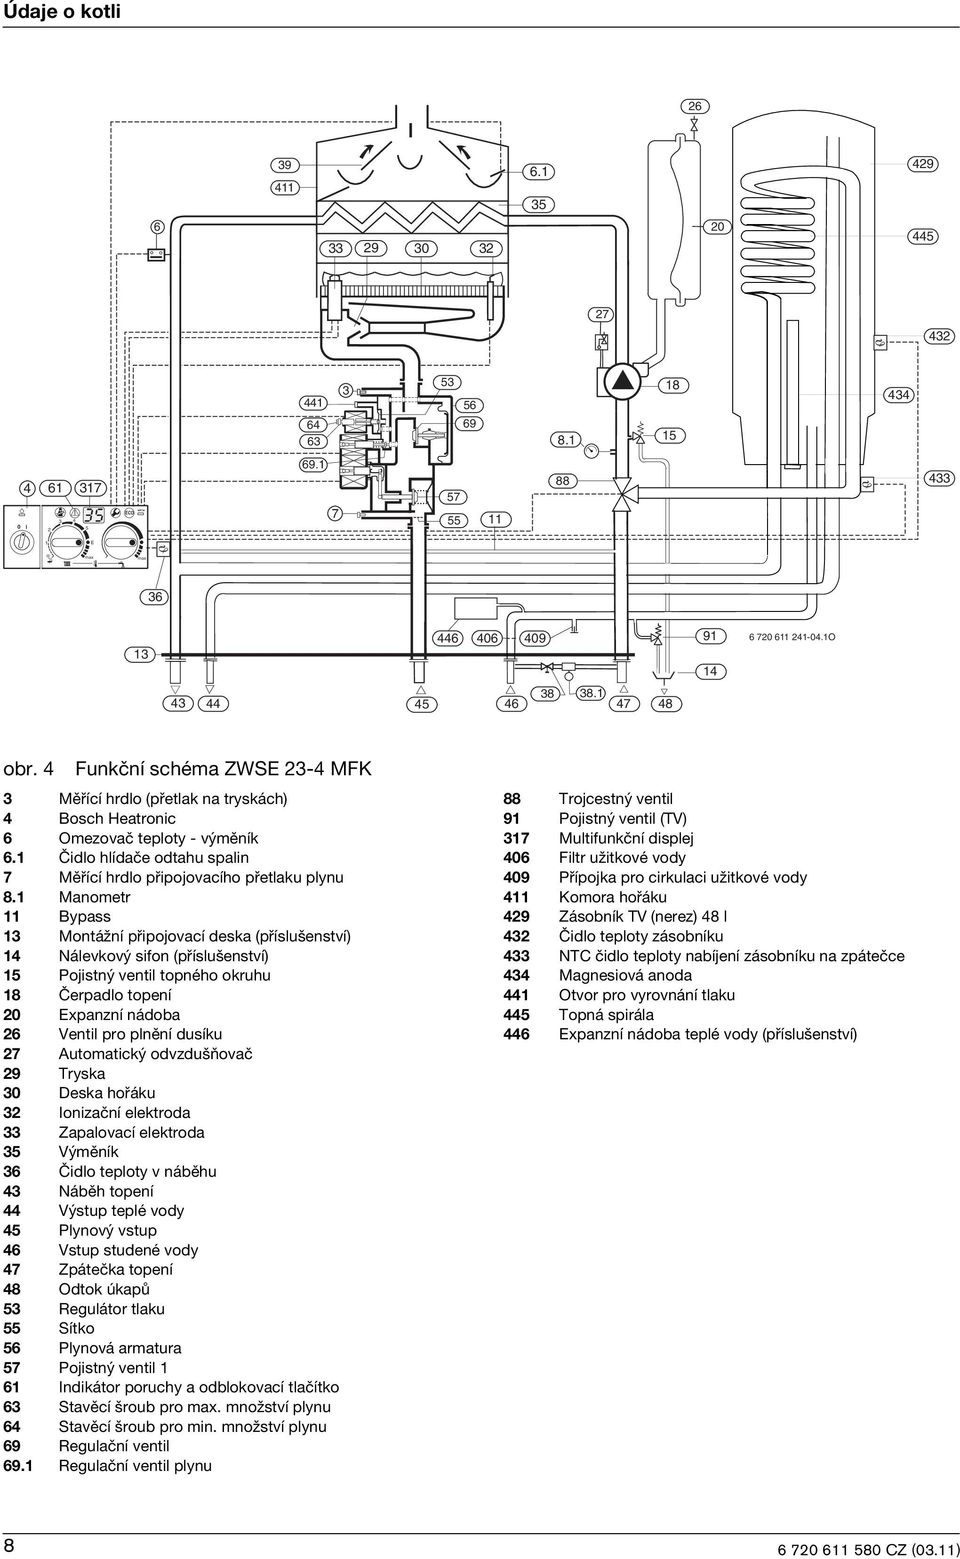 4 Funkční schéma ZWSE 23-4 MFK 3 Měřící hrdlo (přetlak na tryskách) 4 Bosch Heatronc 6 Omezovač teploty - výměník 6.1 Čdlo hlídače odtahu spaln 7 Měřící hrdlo přpojovacího přetlaku plynu 8.